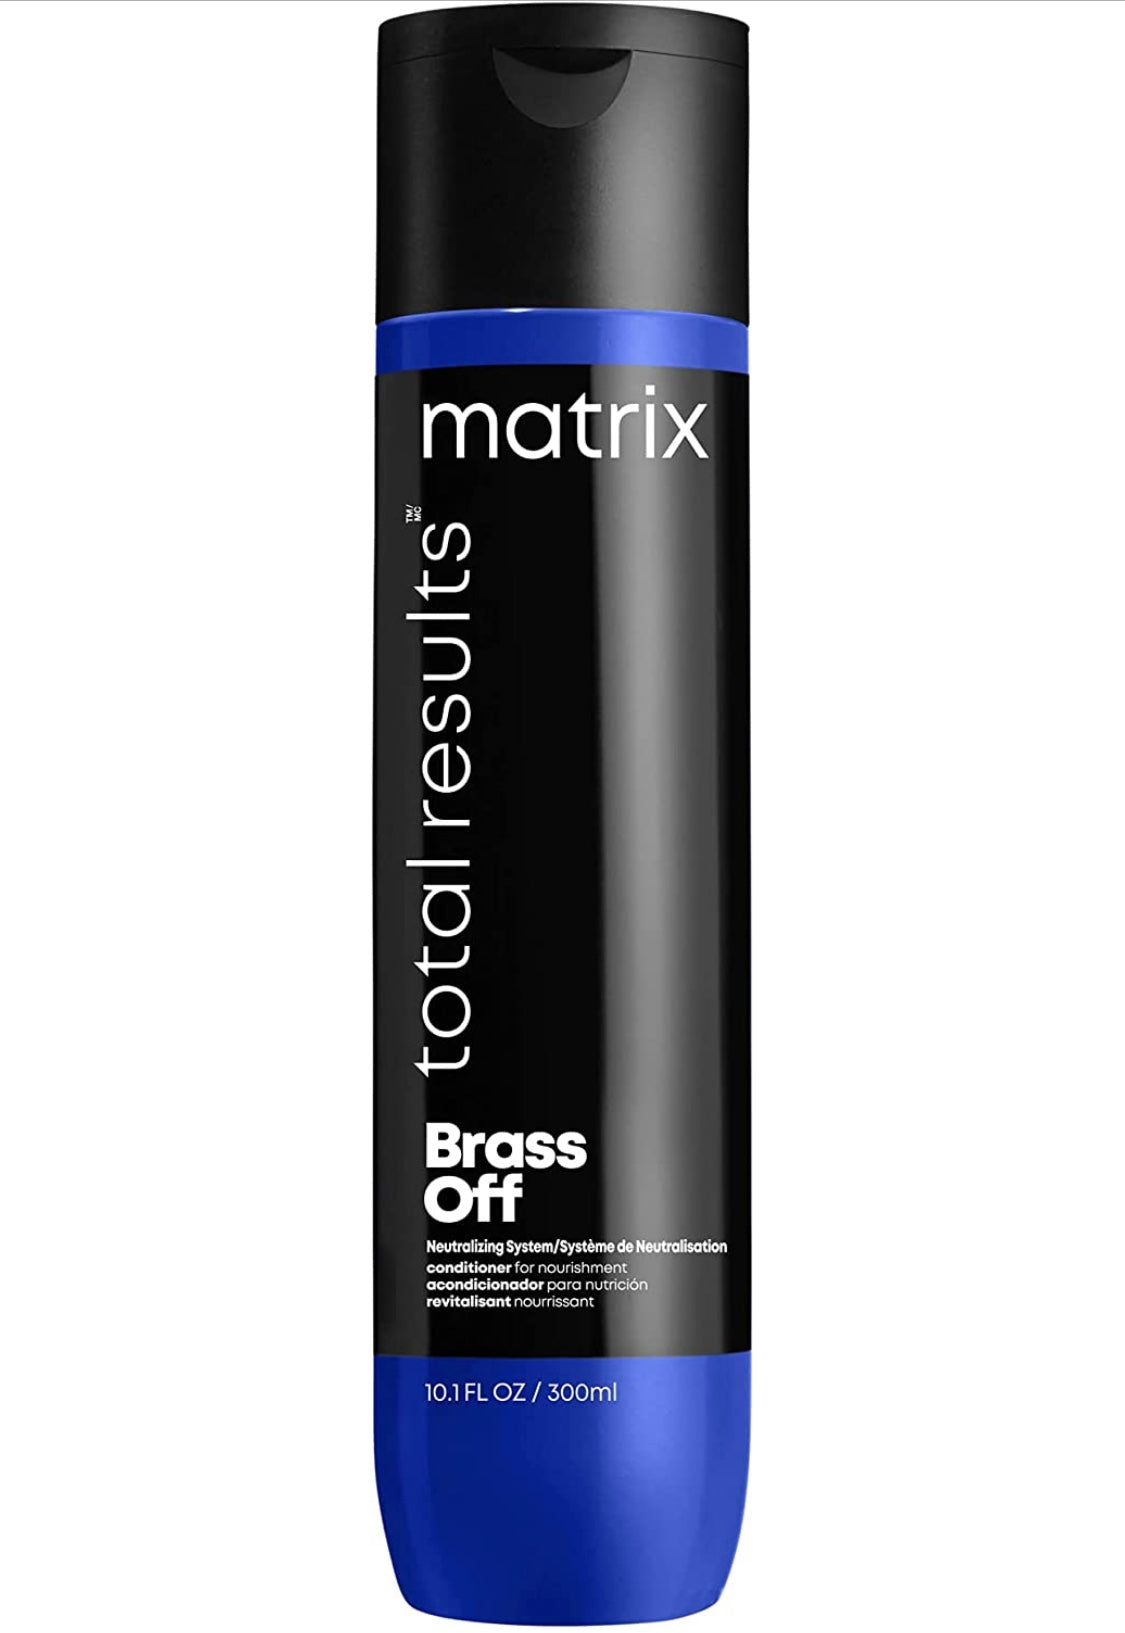 Matrix - Brass Off conditioner 10.1 fl. oz./ 300 ml